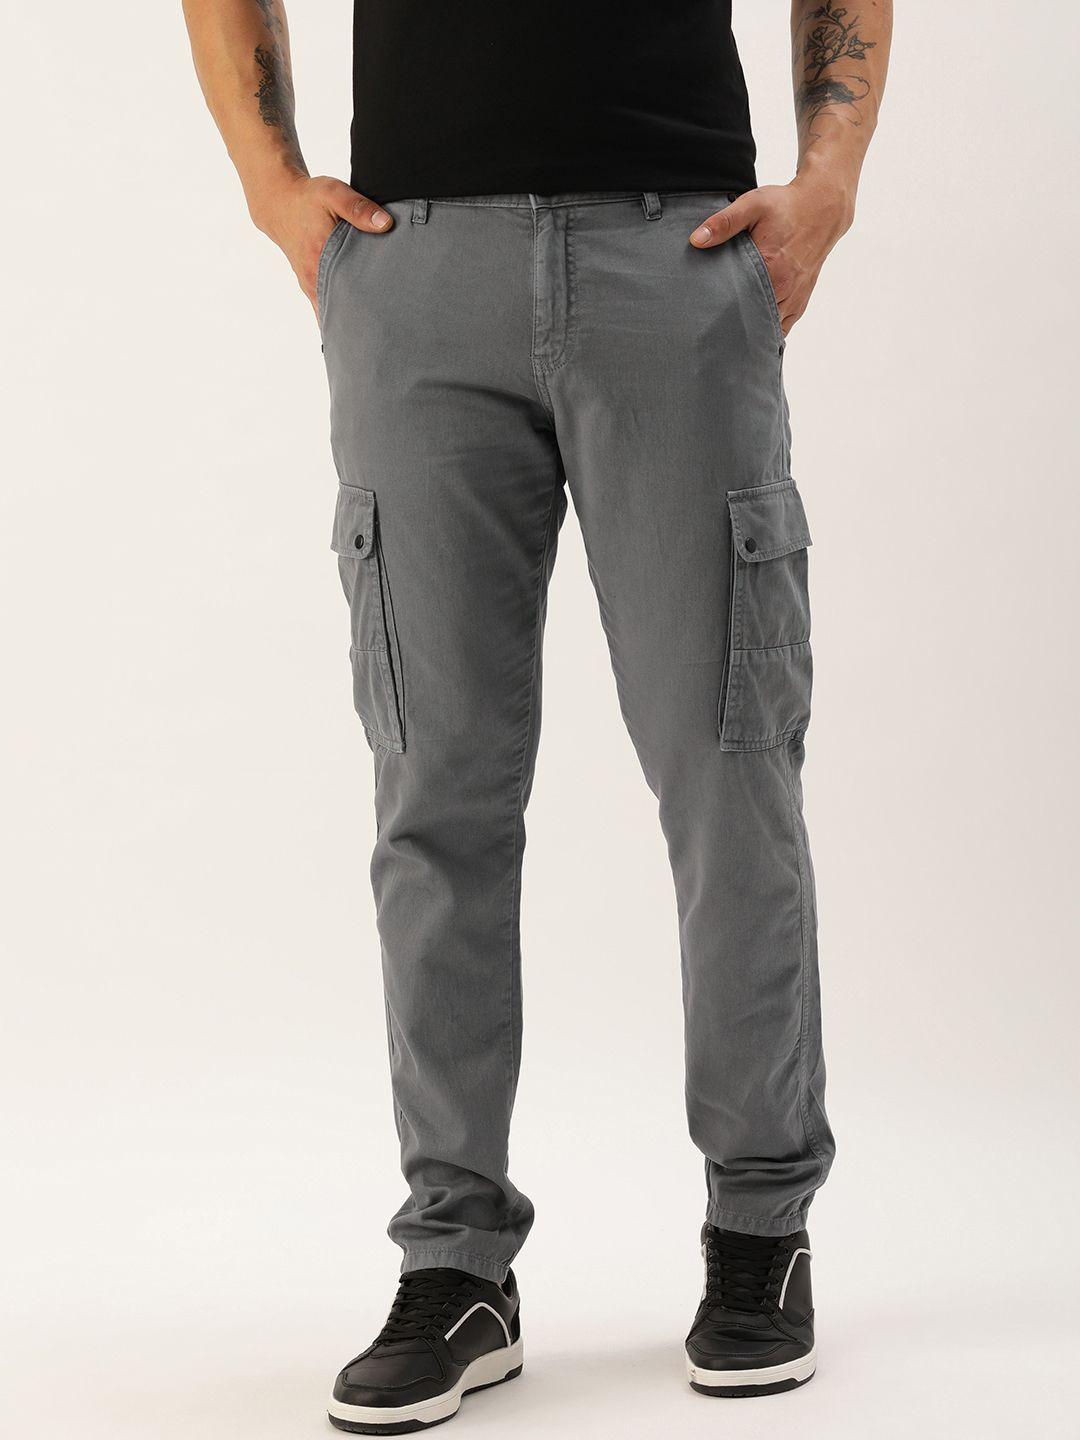 ivoc-men-solid-slim-fit-cargos-trousers